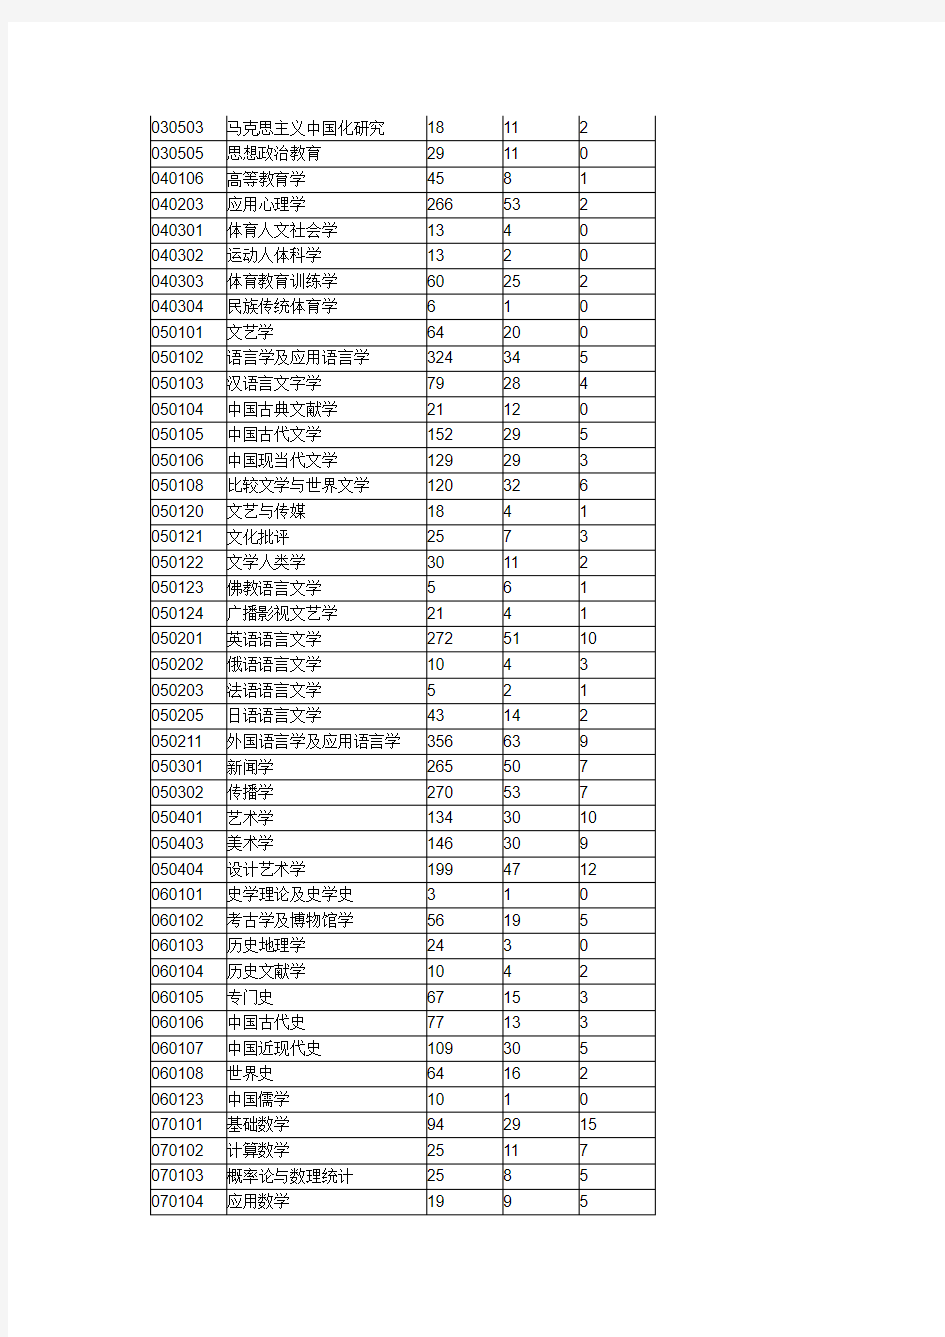 四川大学研究生历年录取人数和分数